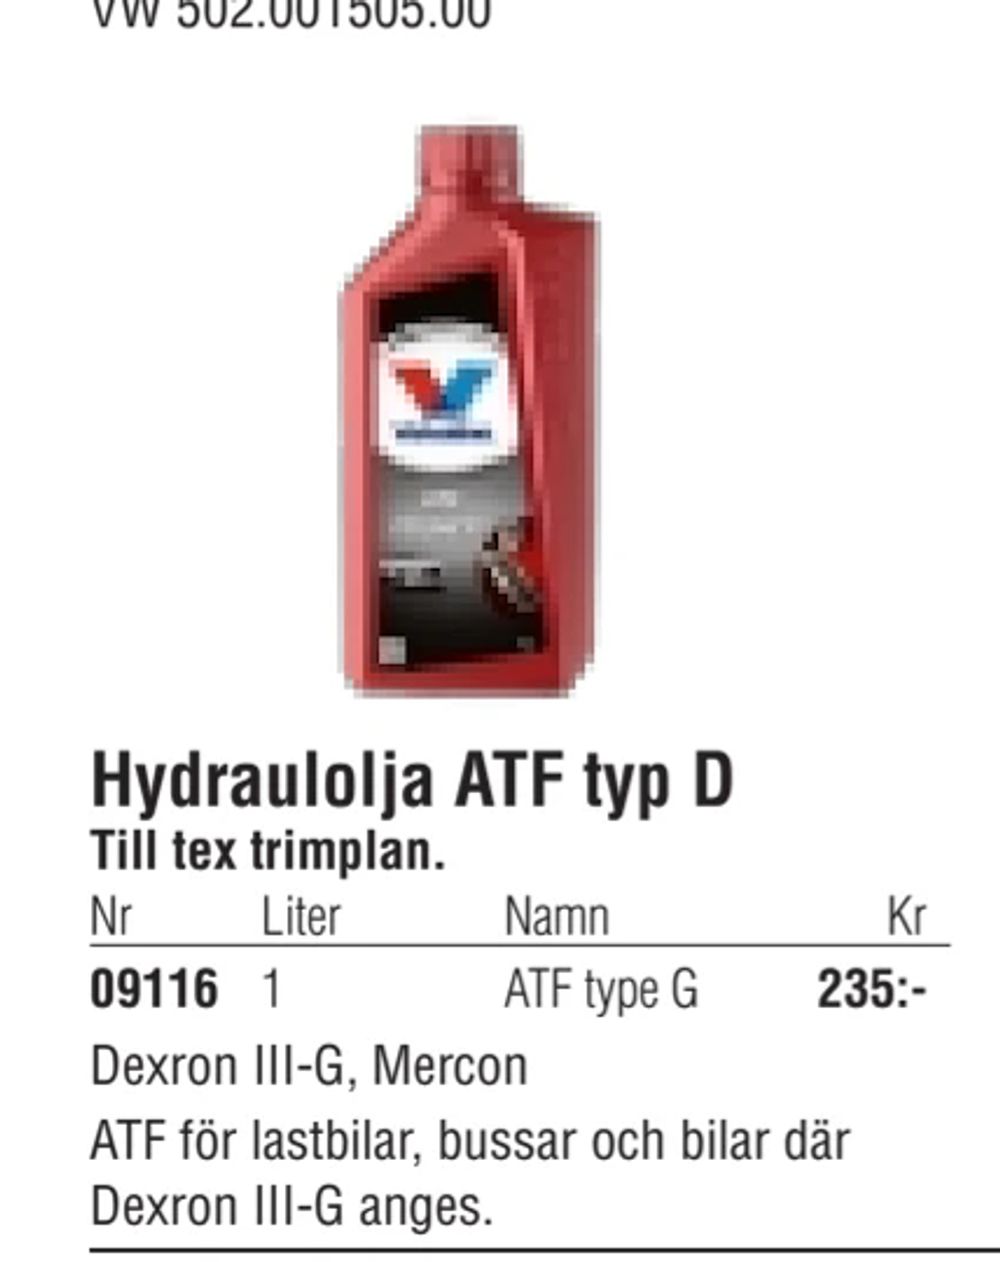 Erbjudanden på Hydraulolja ATF typ D från Erlandsons Brygga för 235 kr